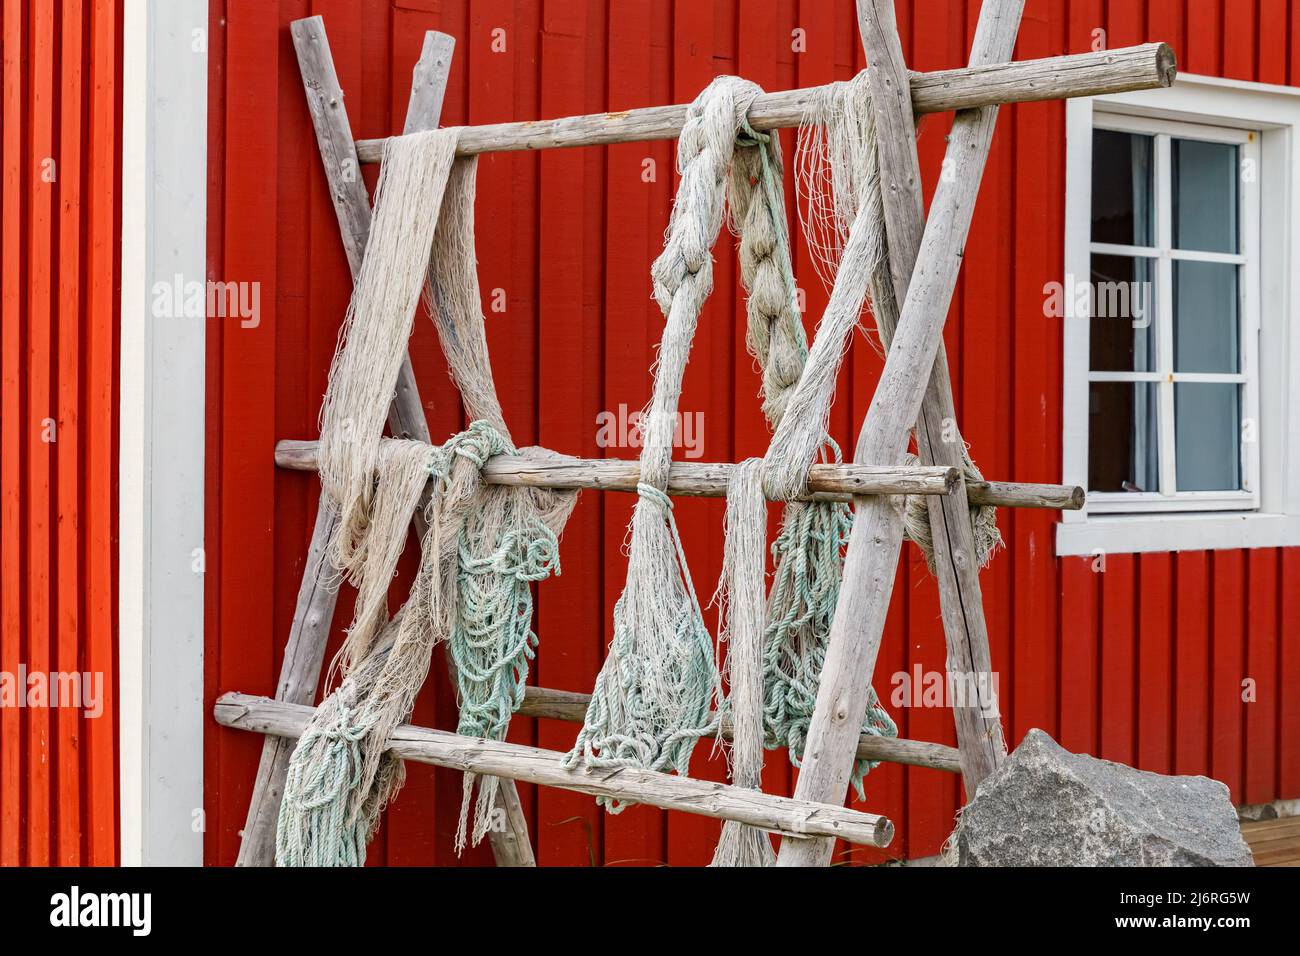 Lofoten-Inseln, Fischernetze, die am Zaun oder auf der Veranda hängen, klassische norwegische Landschaft, Haus von roter Farbe, Fischnetze sorgfältig ausgewählt Stockfoto